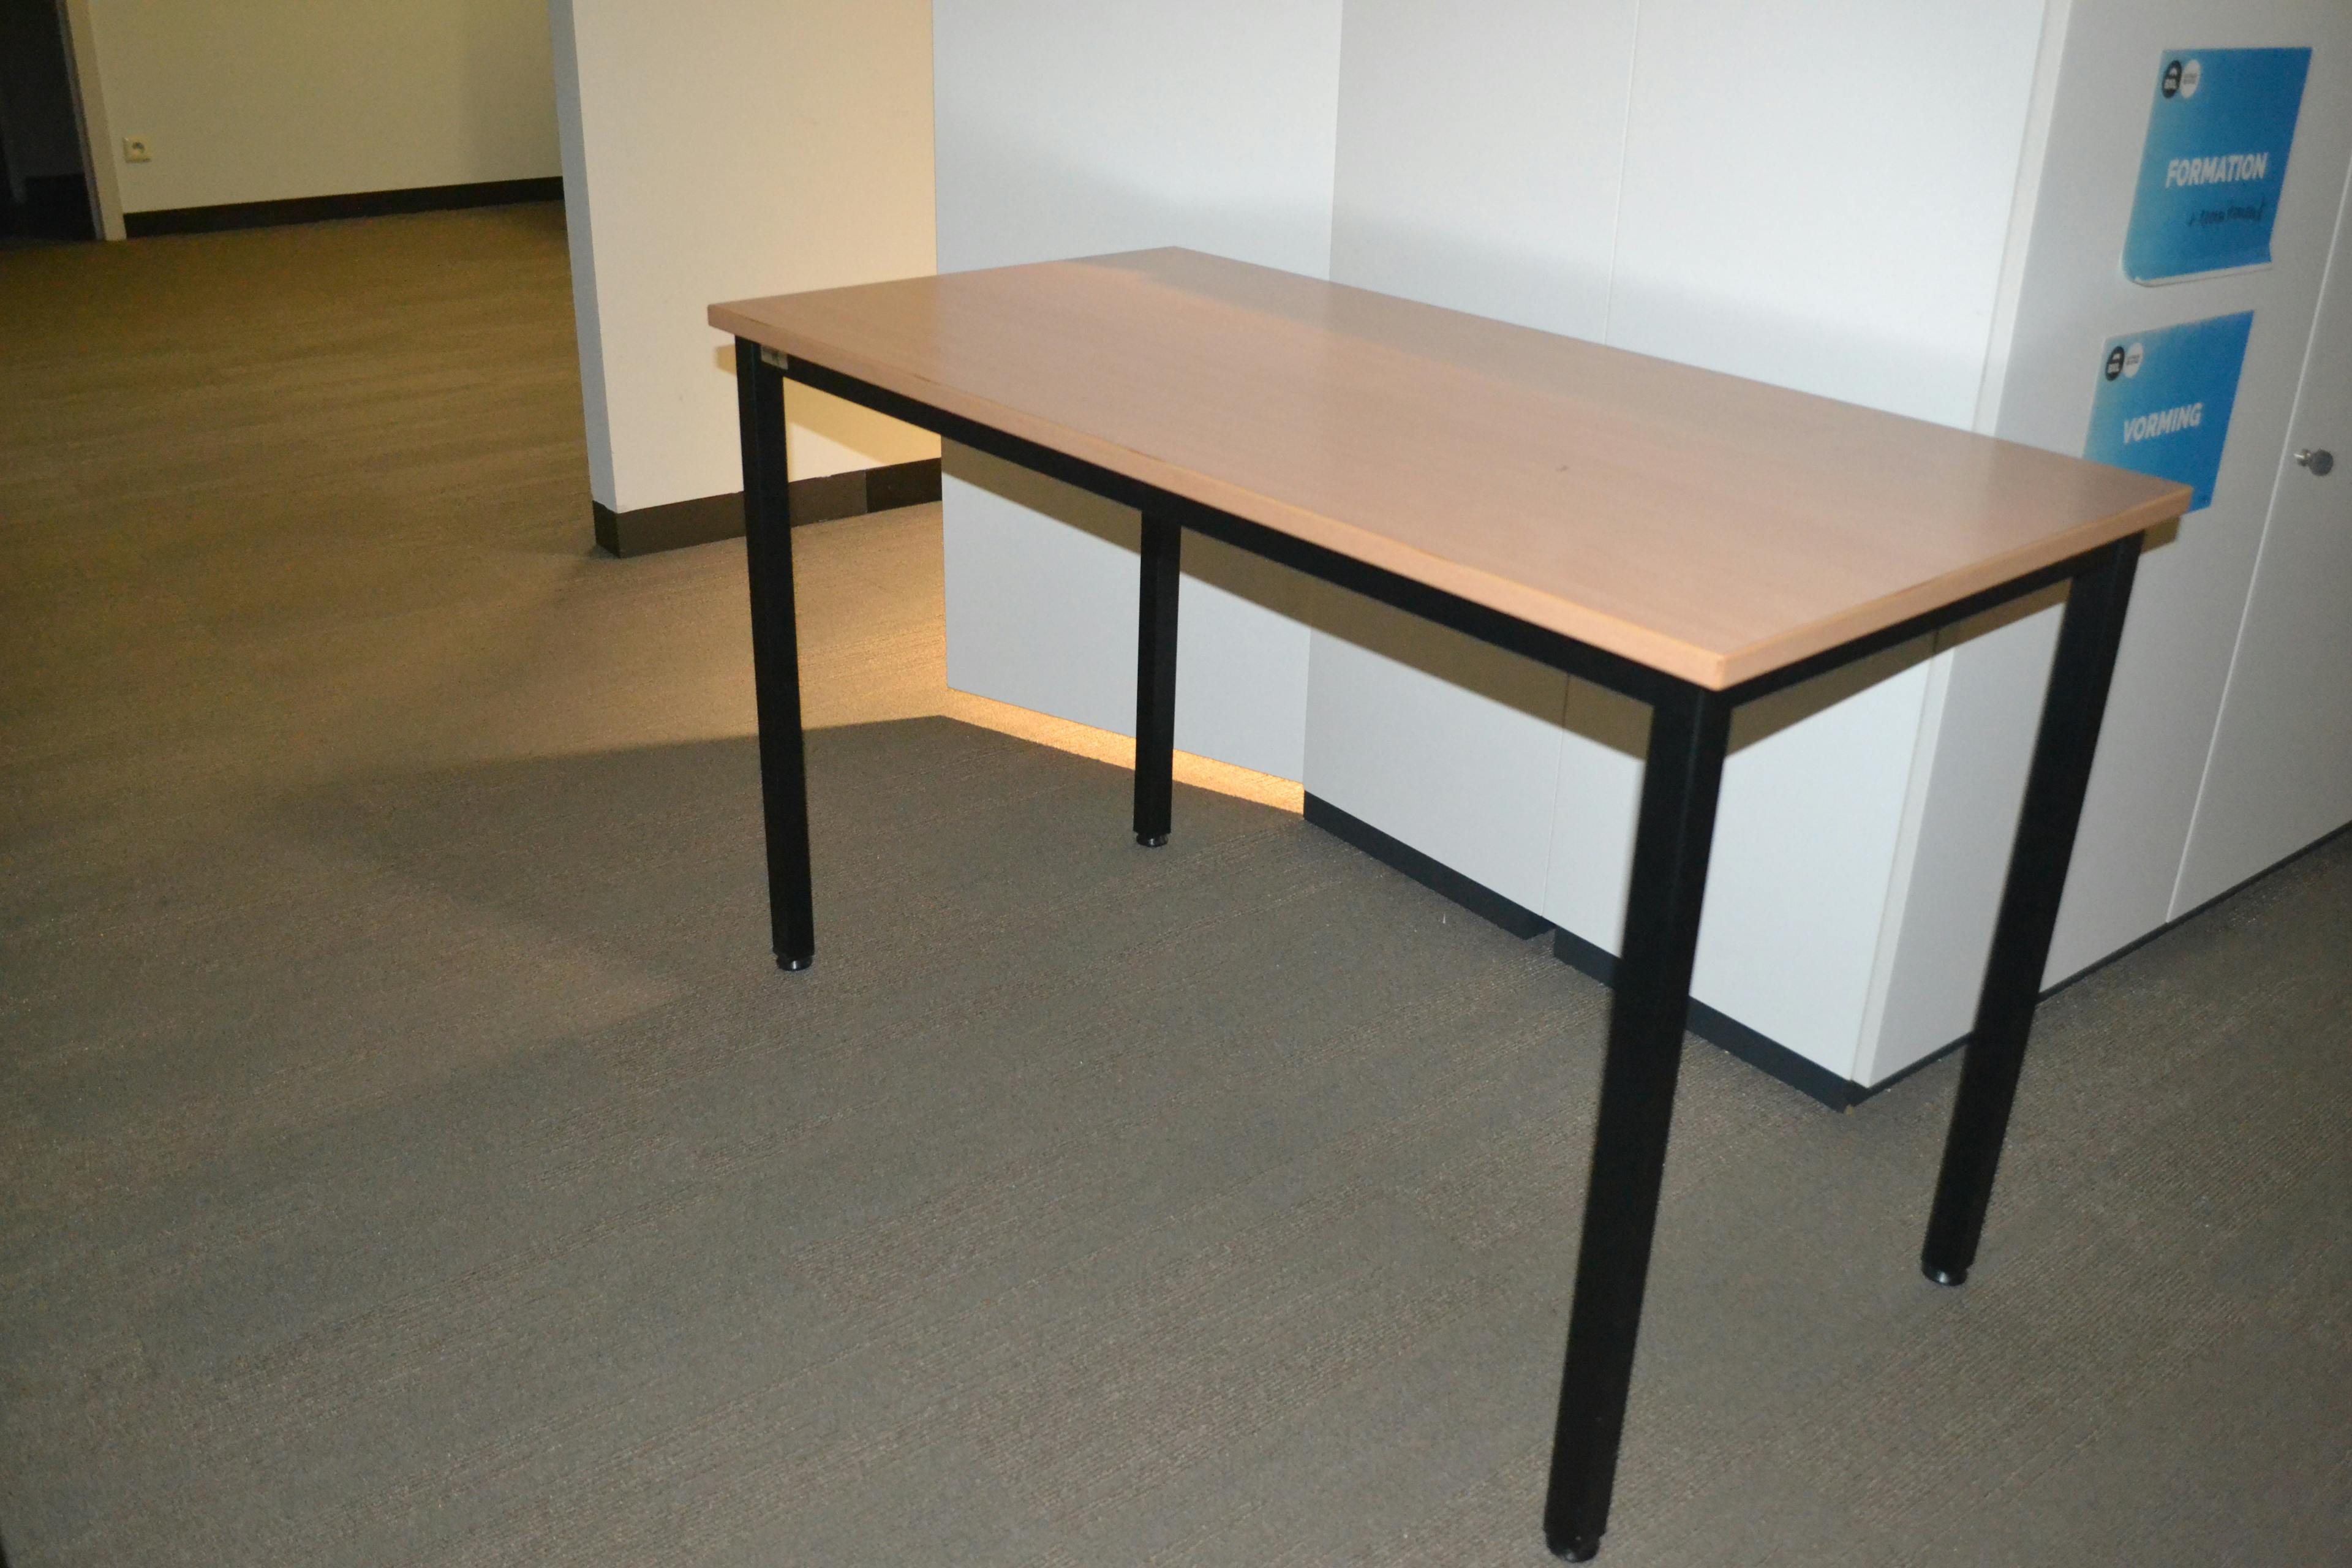 Table rectangulaire / Rechthoekige Tafel - Tweedehands kwaliteit "Tafels" - Relieve Furniture - 1